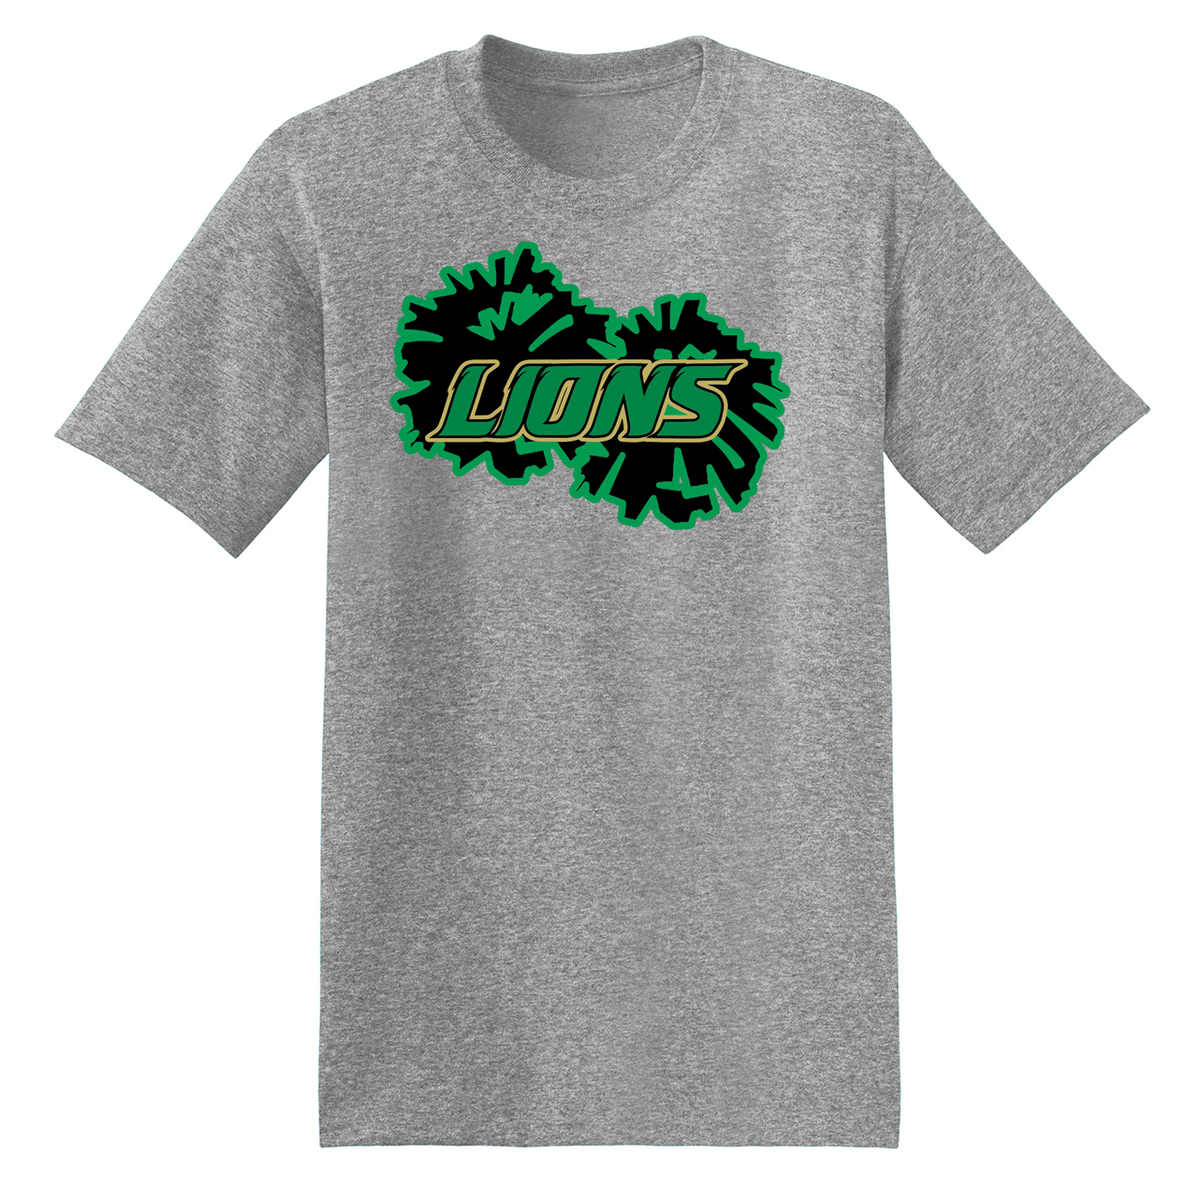 Lanierland Lions Cheer T-Shirt